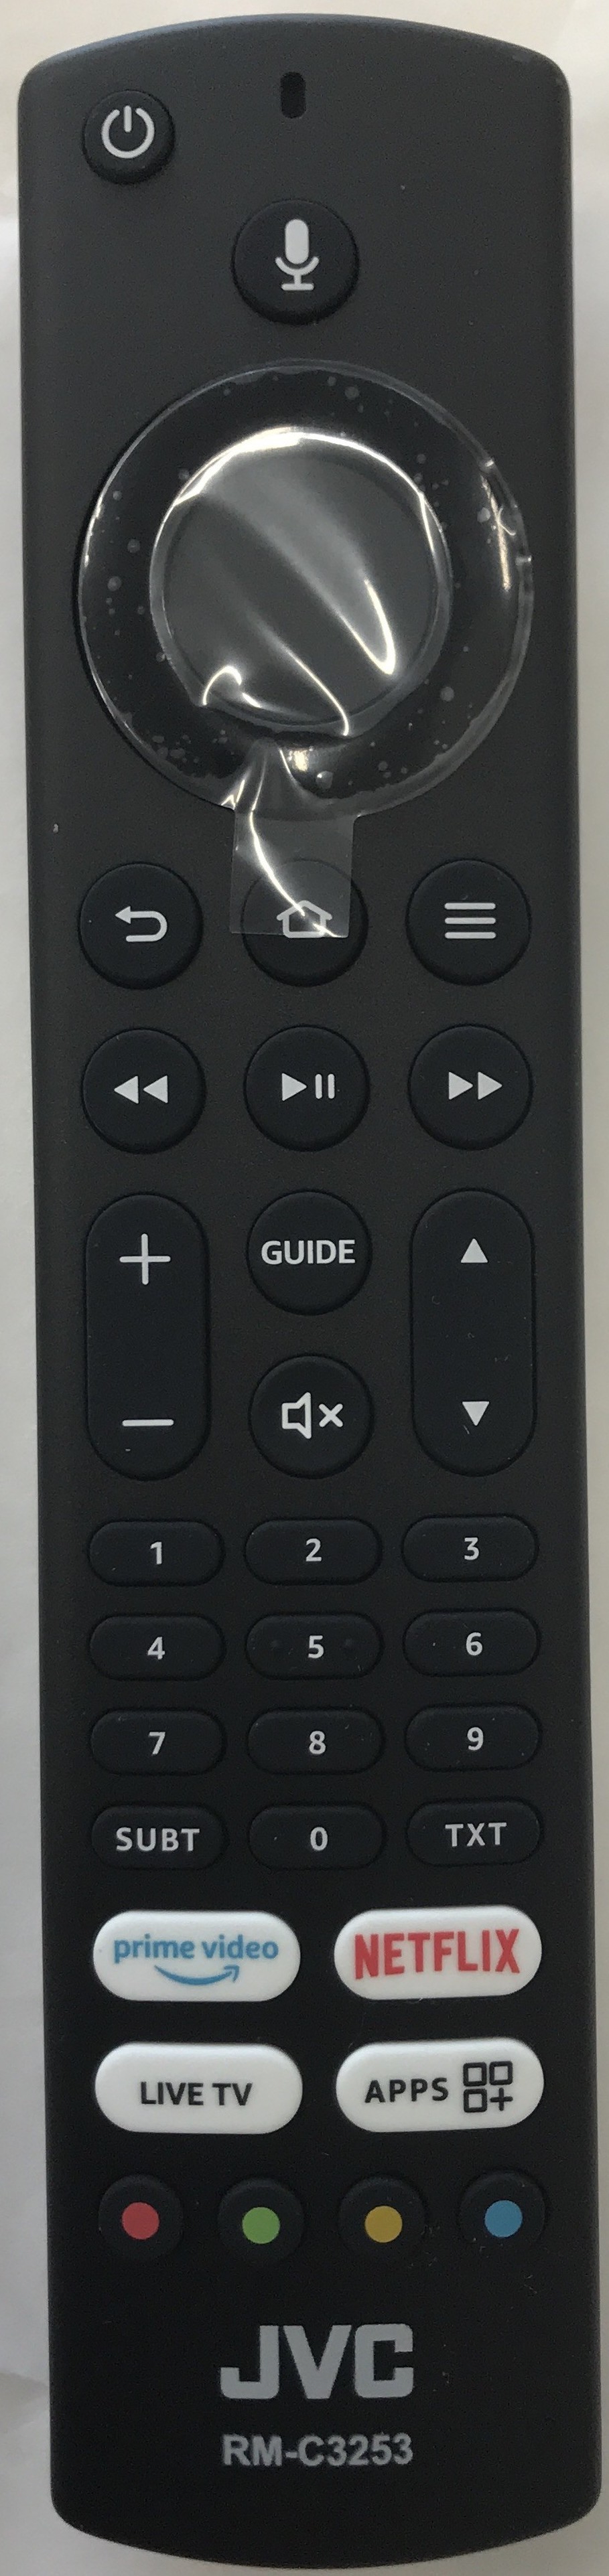 JVC LT-49CF890 Smart Remote Control Original   